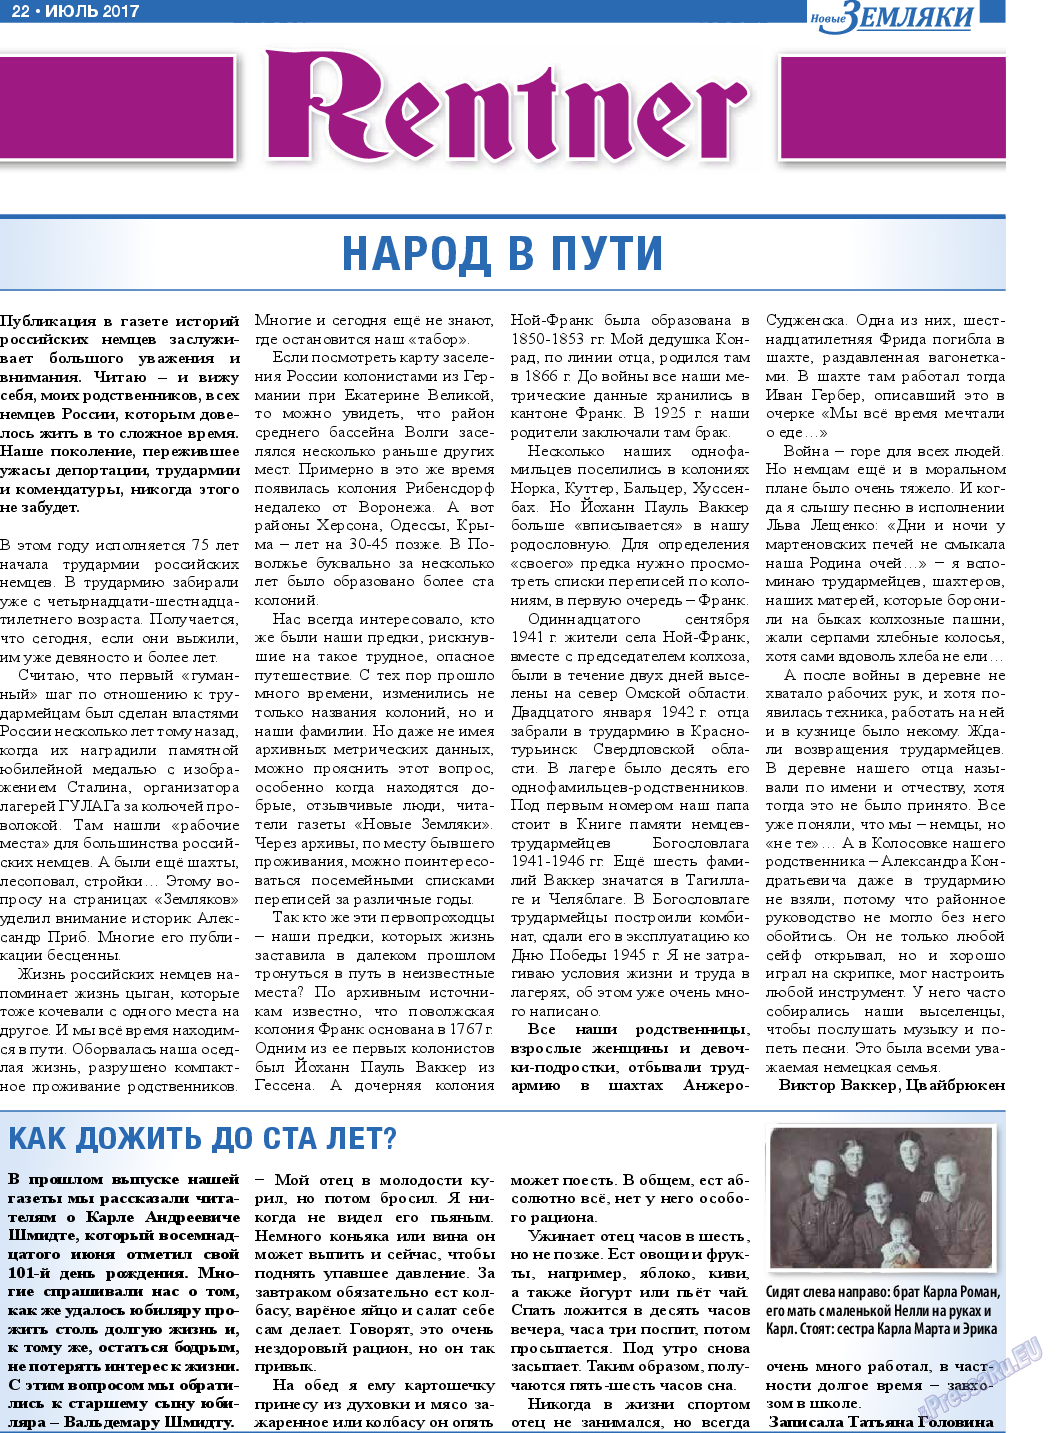 Новые Земляки (газета). 2017 год, номер 7, стр. 22